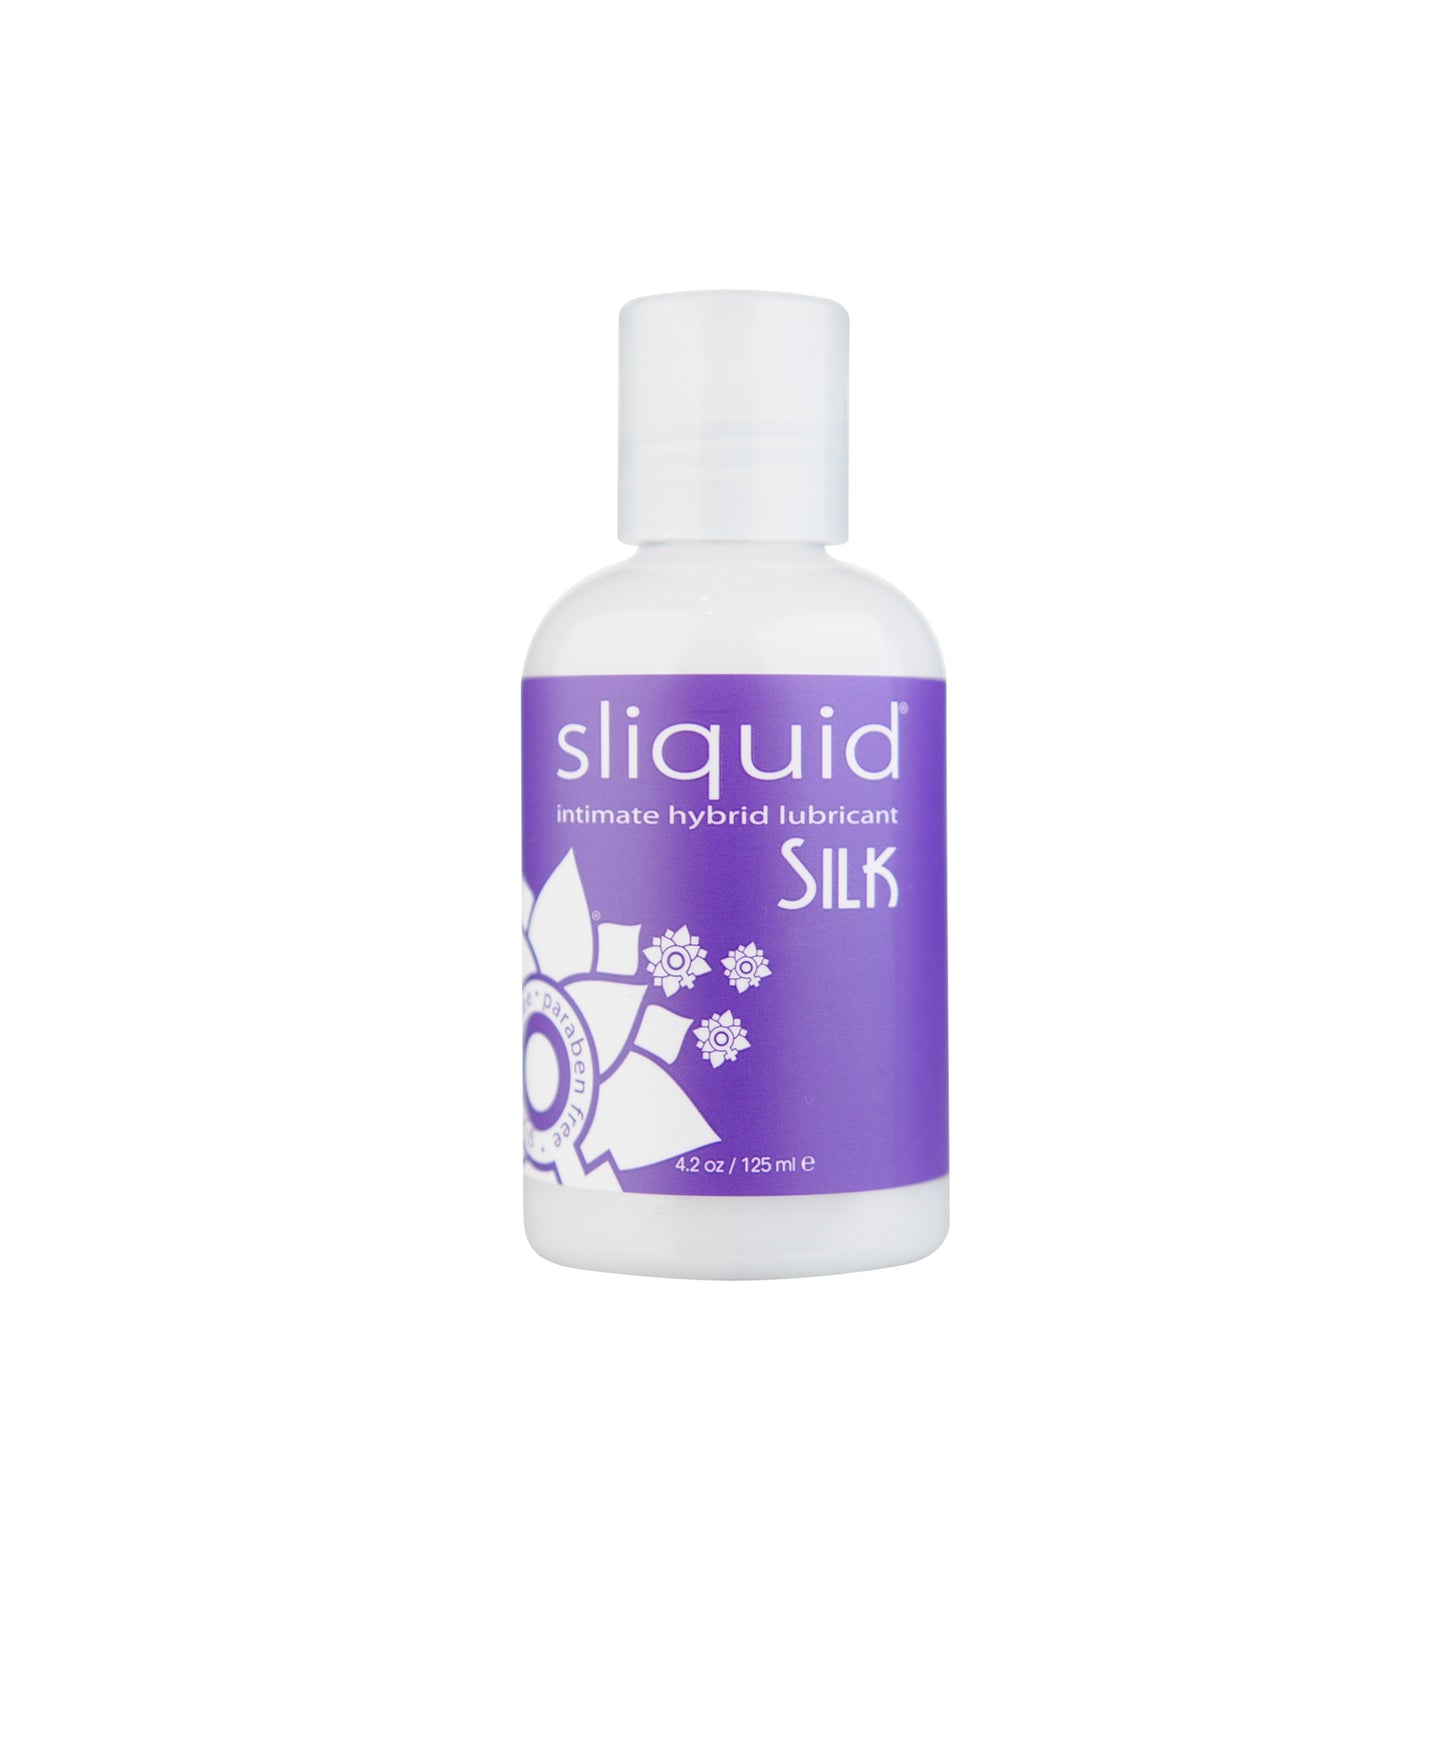 Sliquid Silk Hybrid Lubricant in 4.2oz/125ml